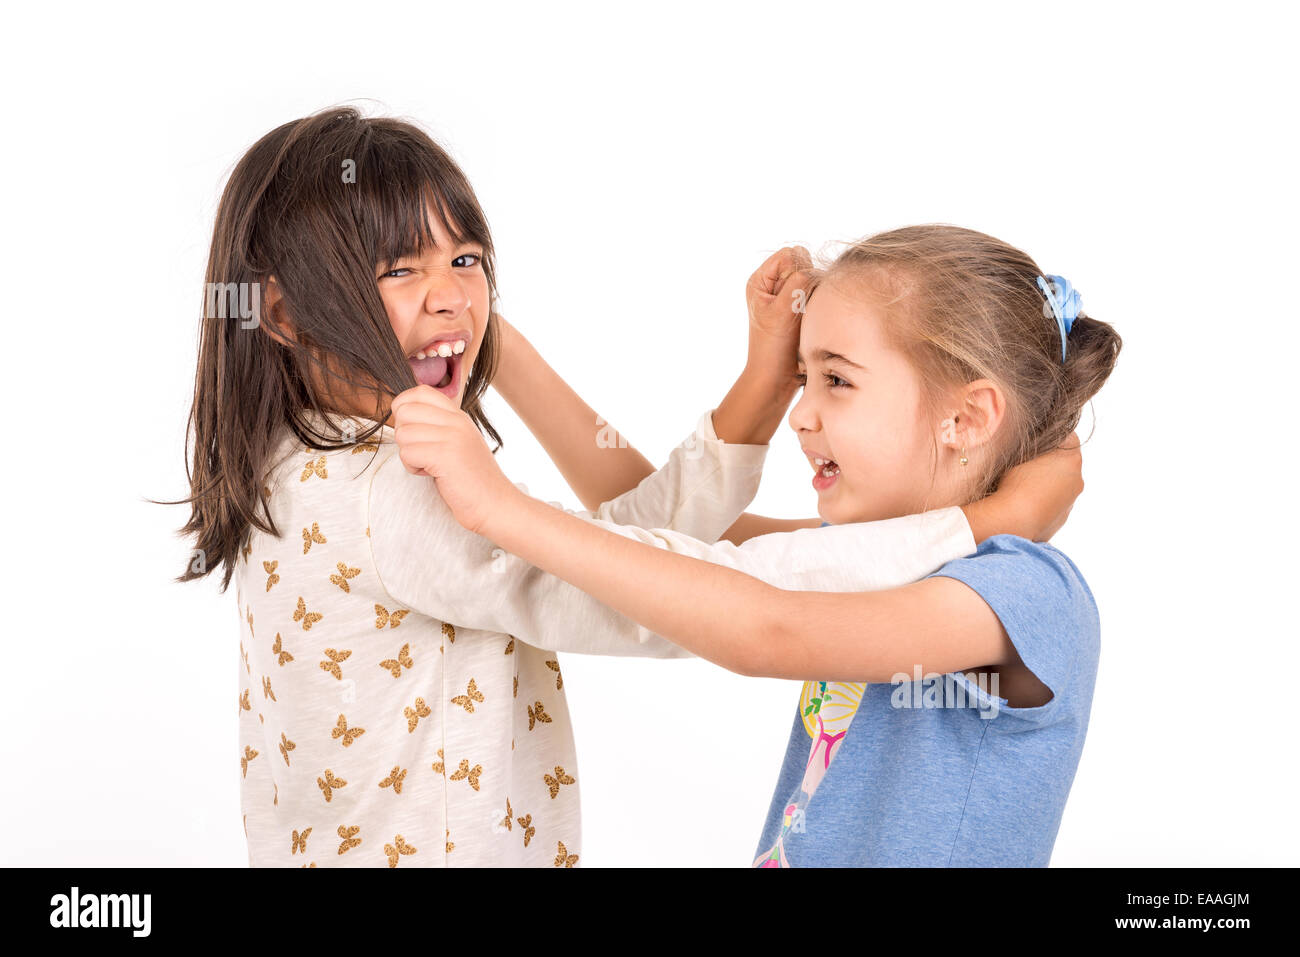 Junge Mädchen kämpfen, ziehen Haare isoliert in weiß Stockfoto